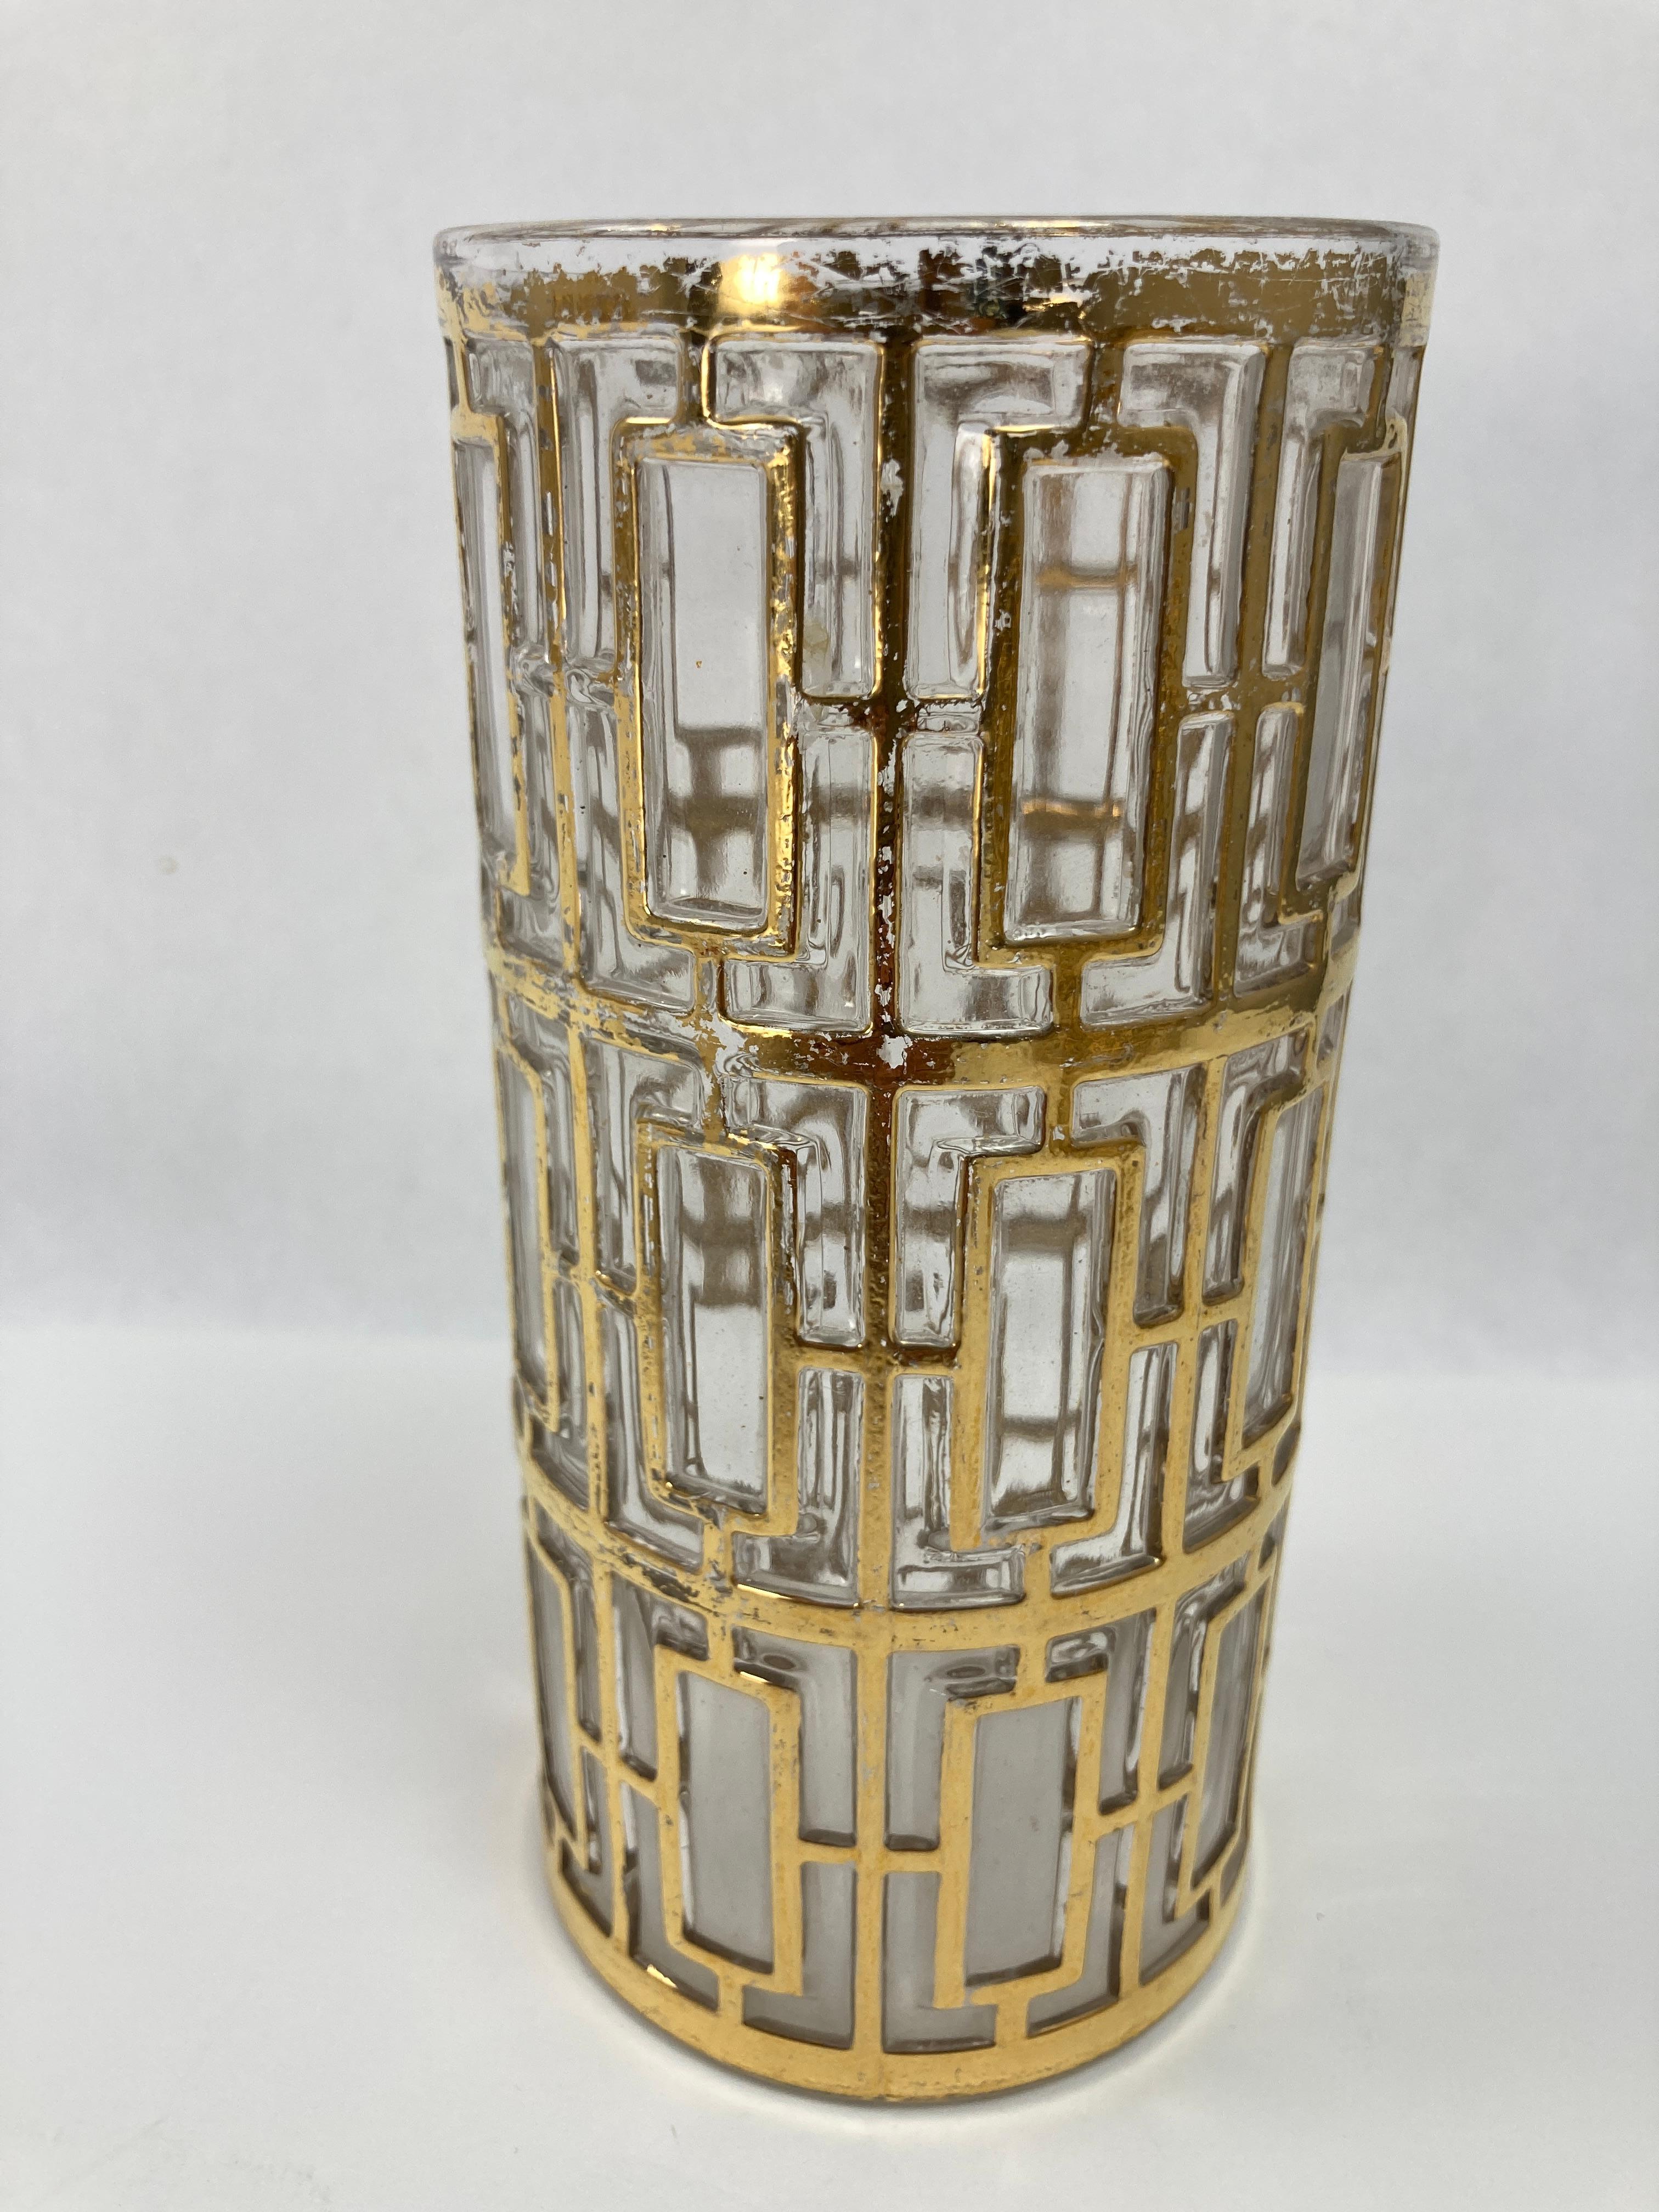 1960s Imperial Glass Shoji Barware, Vintage Gold Collectible Glassware Single Collins Highball Glas.
Vintage Imperial Glass Gold Shoji Long Glasses Set Regency Hollywood, 1960er Jahre.
Seltene kaiserliche Shoji-Gold-Trinkgläser im Bar-Set aus der